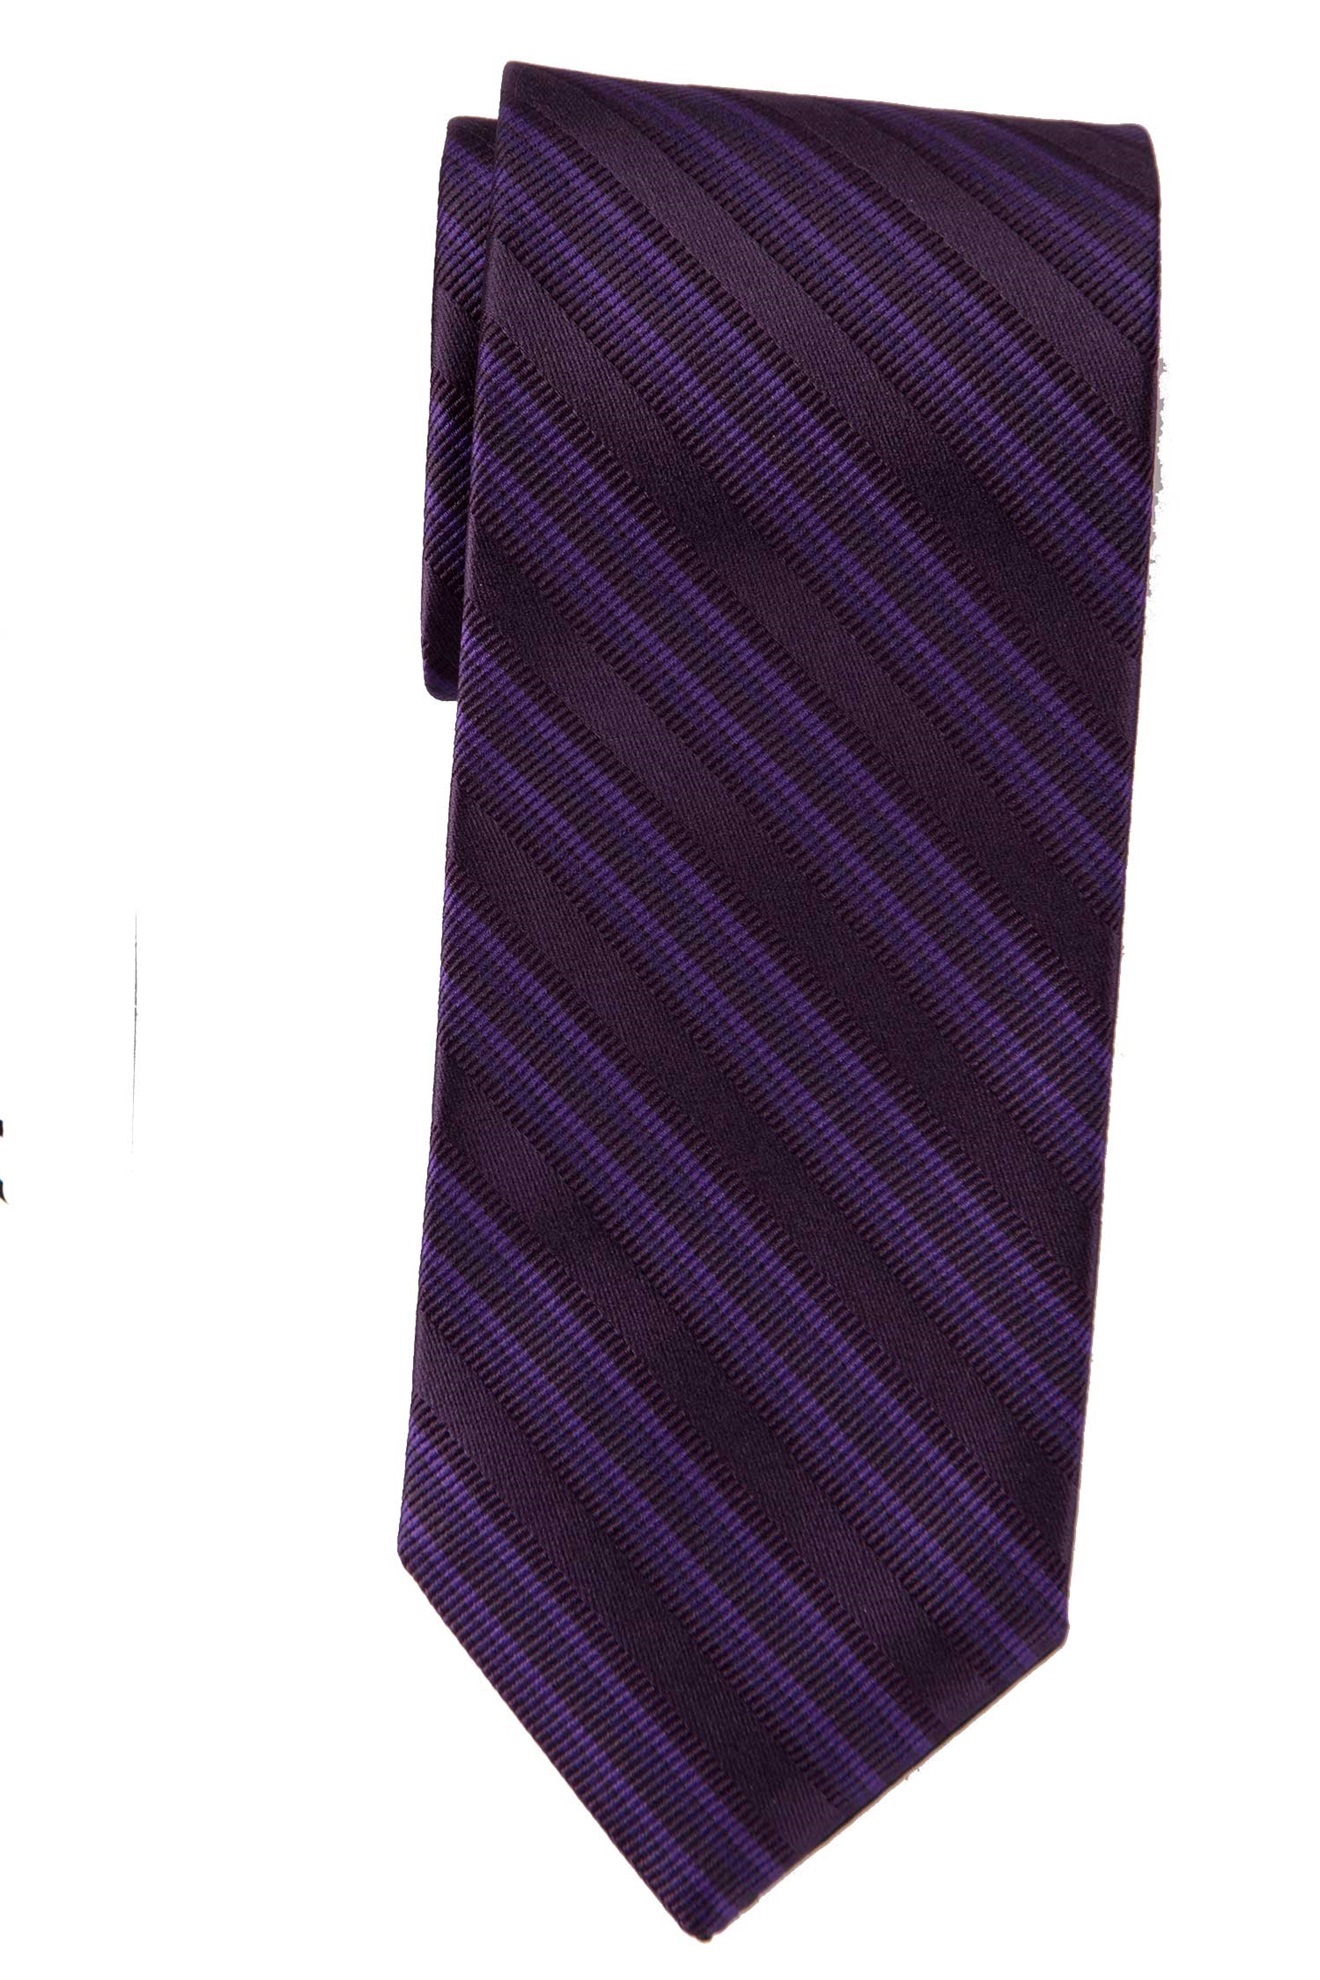 Milroy's Tuxedos - Grape Multi-Stripe